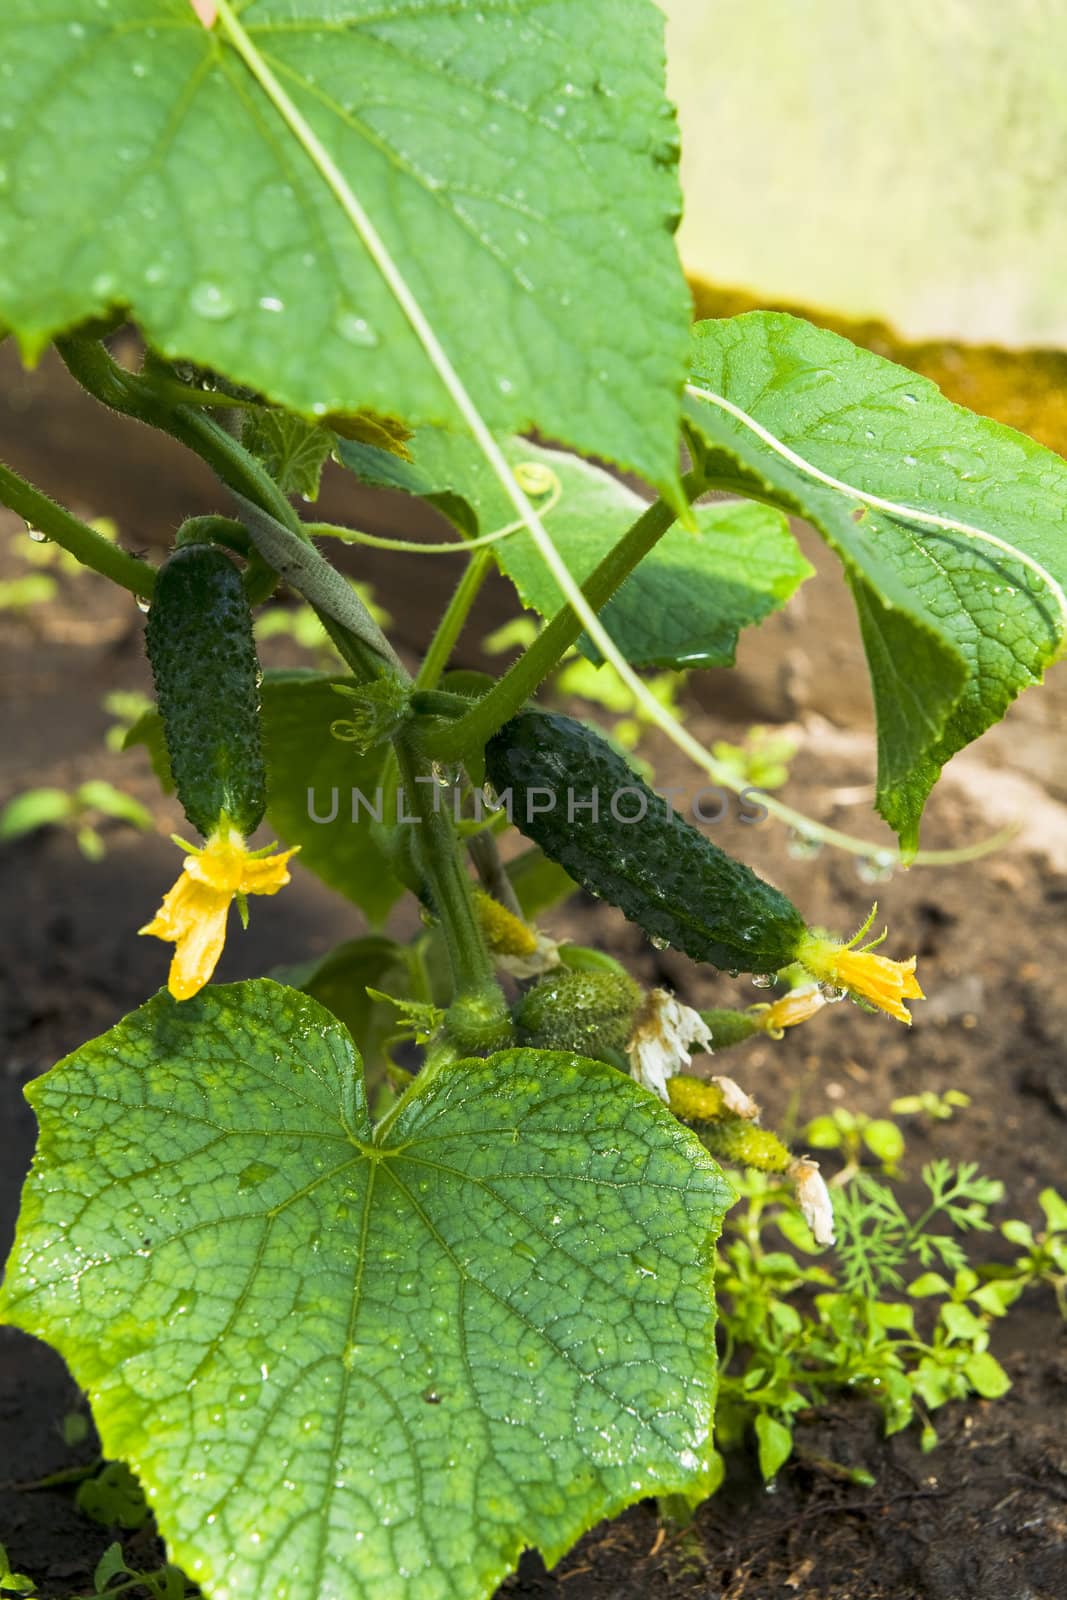 Cucumber is grown by Nikonas